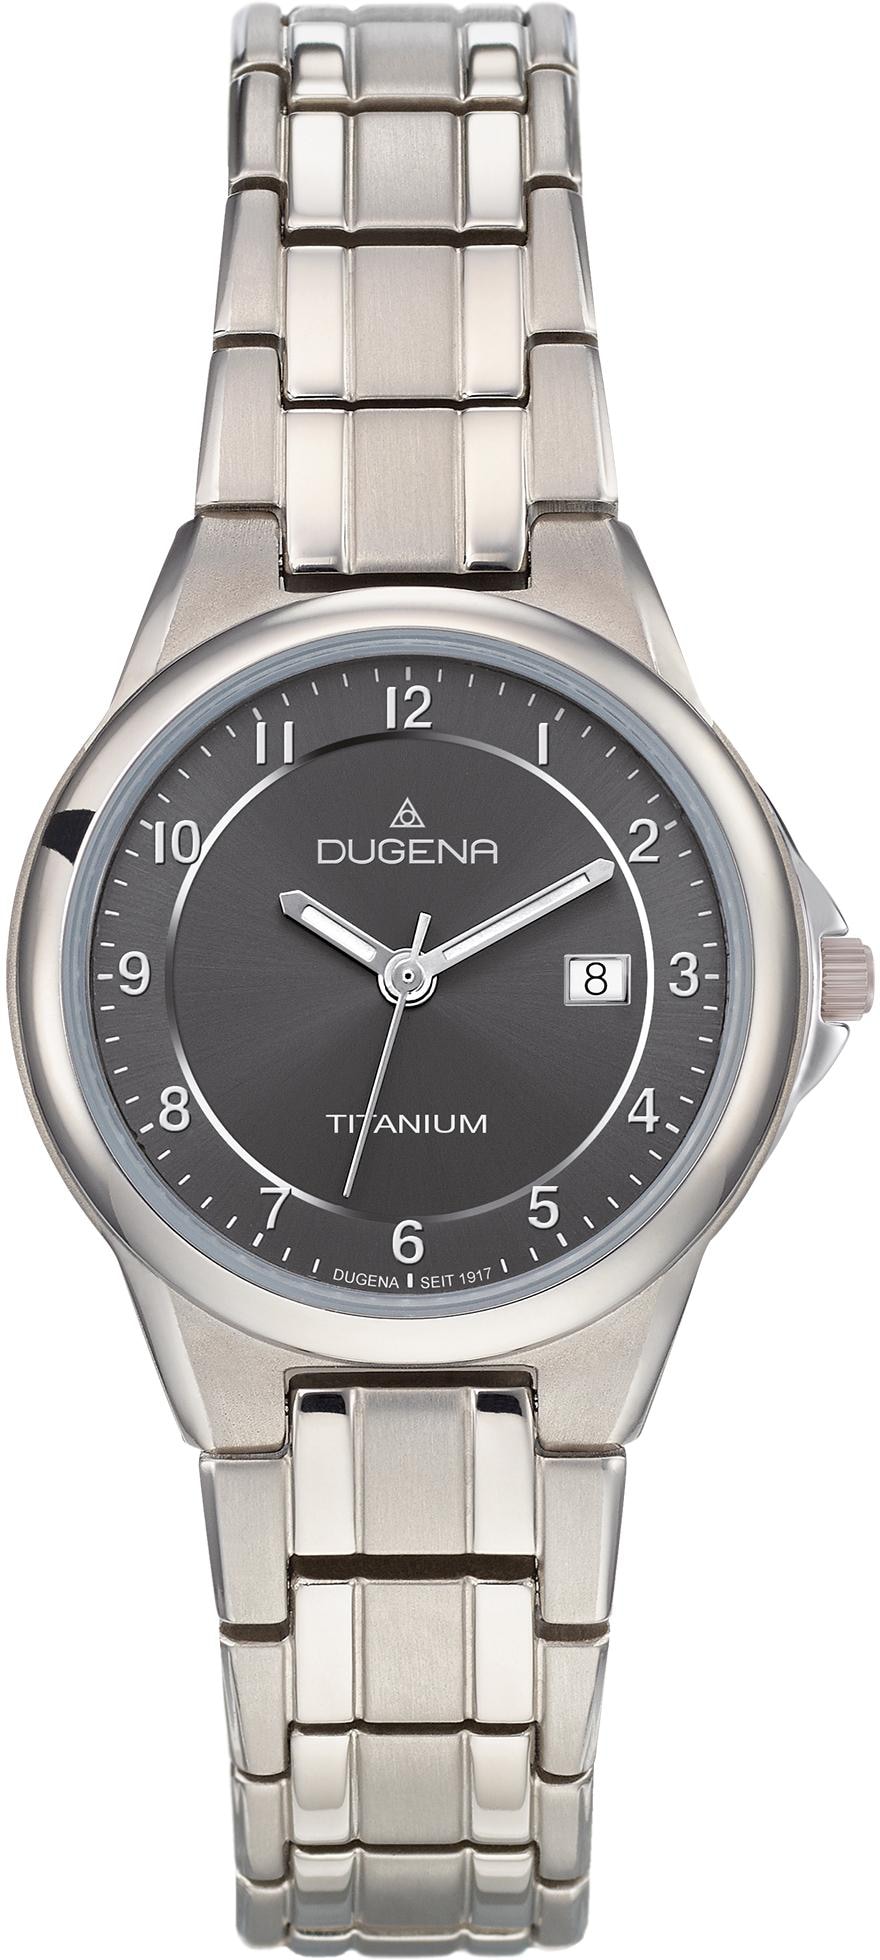 Dugena Online-Shop » Dugena Uhren kaufen | BAUR